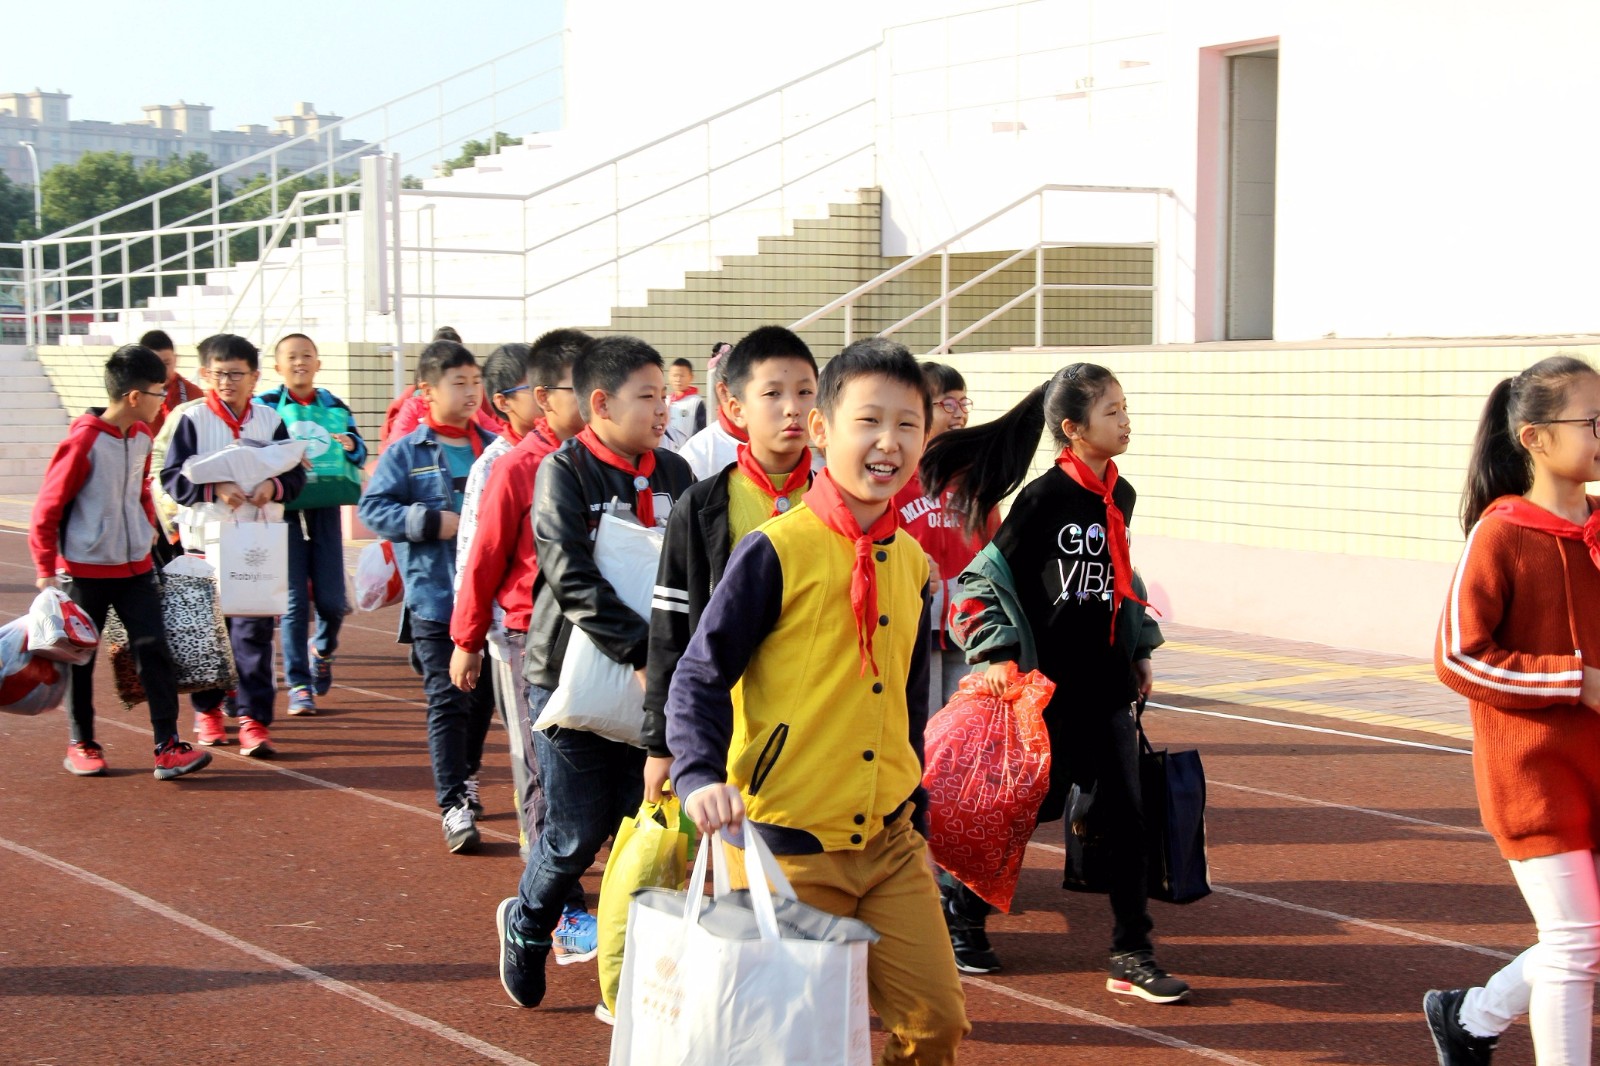 情传千里,温暖相衣——记泗门镇中心小学爱心捐衣活动